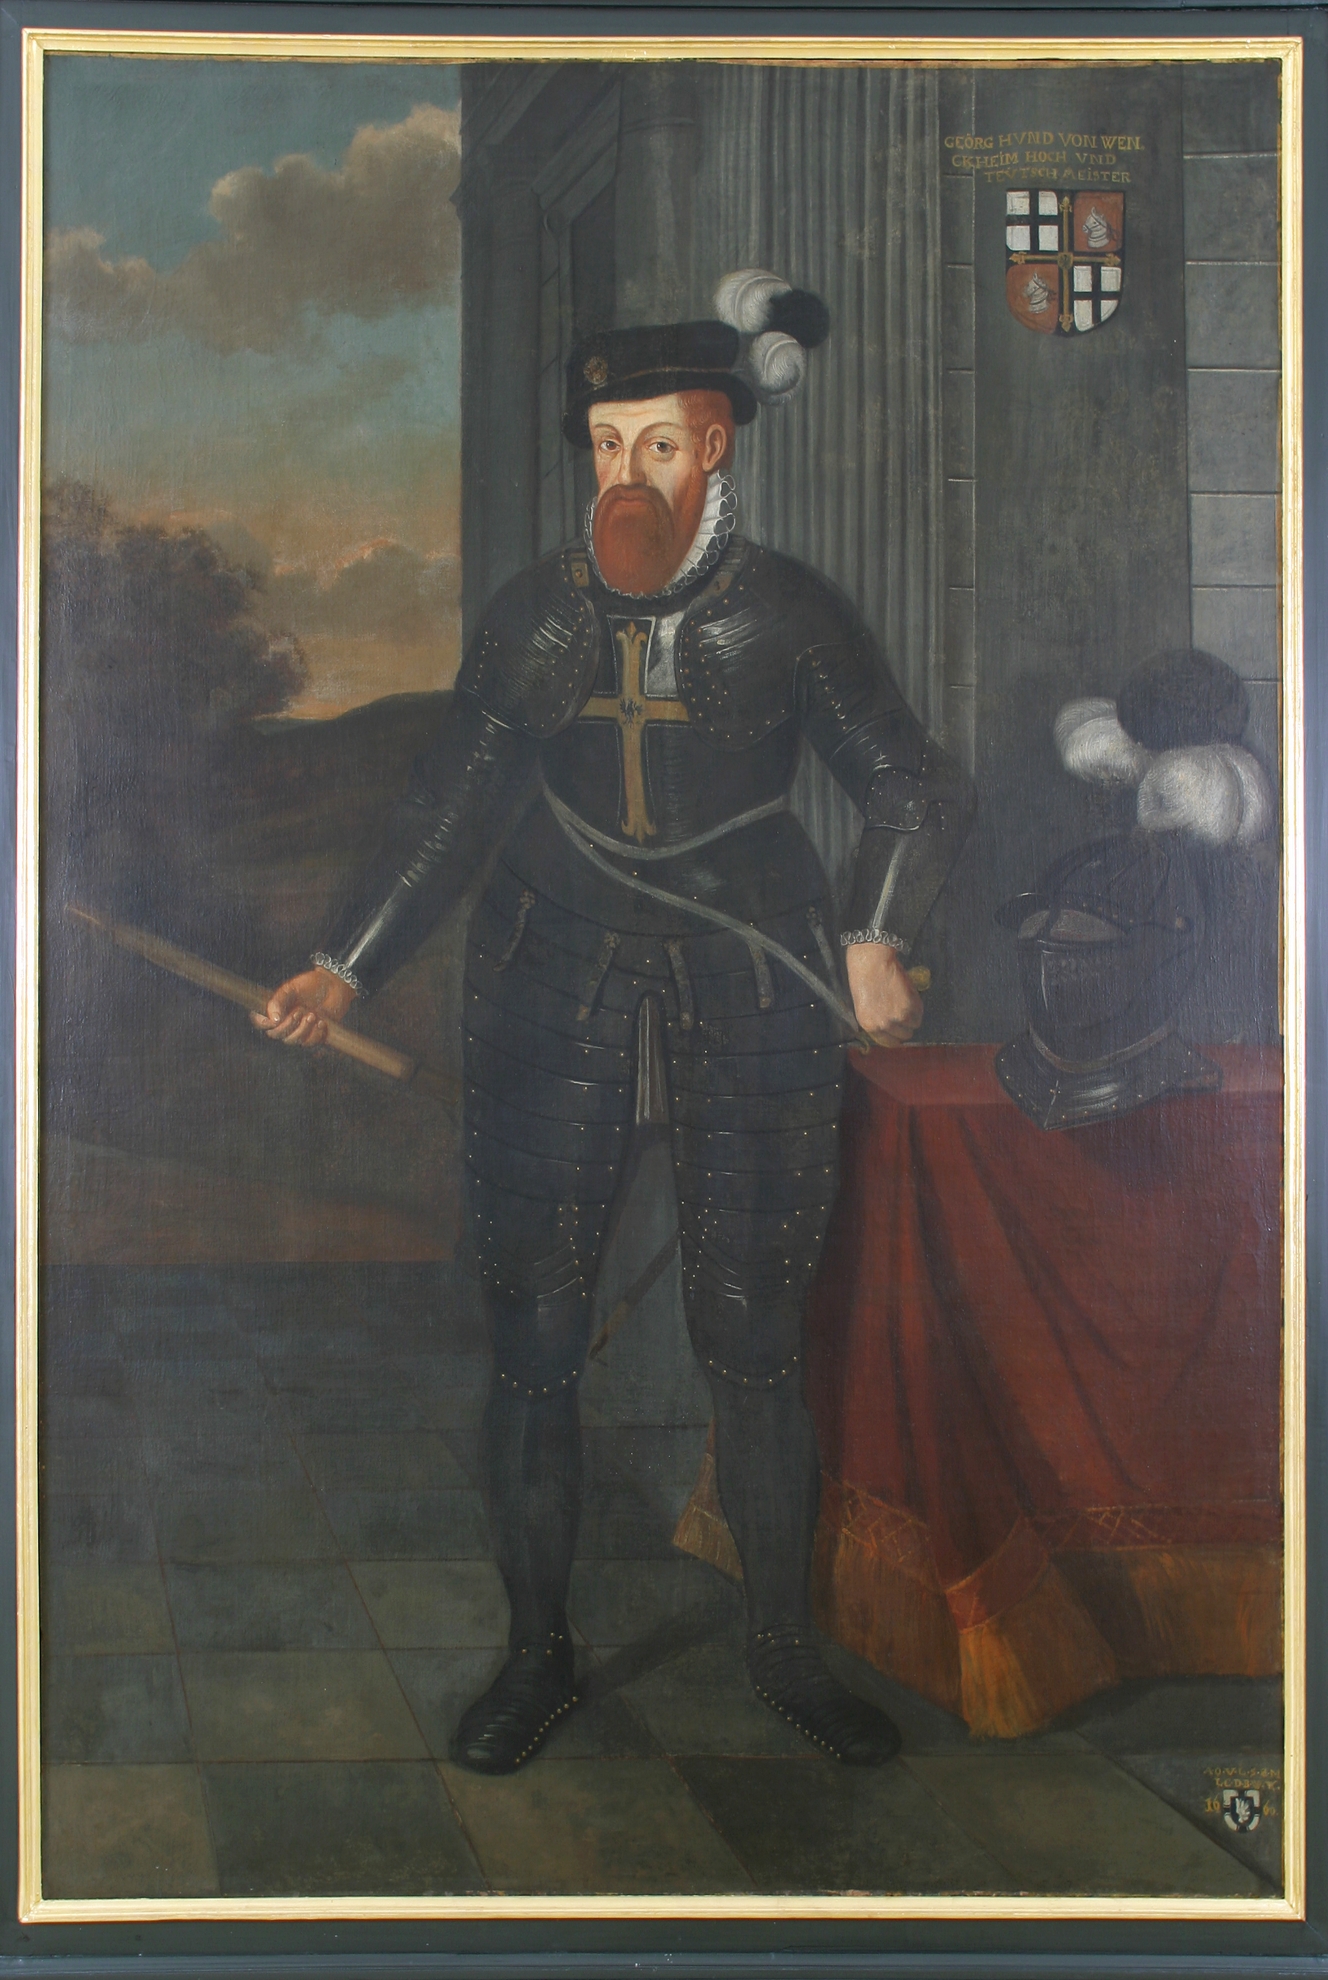 Das Bild zeigt ein Porträt des Hochmeisters Georg Hund von Wenckheim. Er trägt eine Ritterrüstung und neben ihm liegt ein Ritterhelm. Oben rechts in der Ecke ist das Hochmeisterwappen abgebildet.